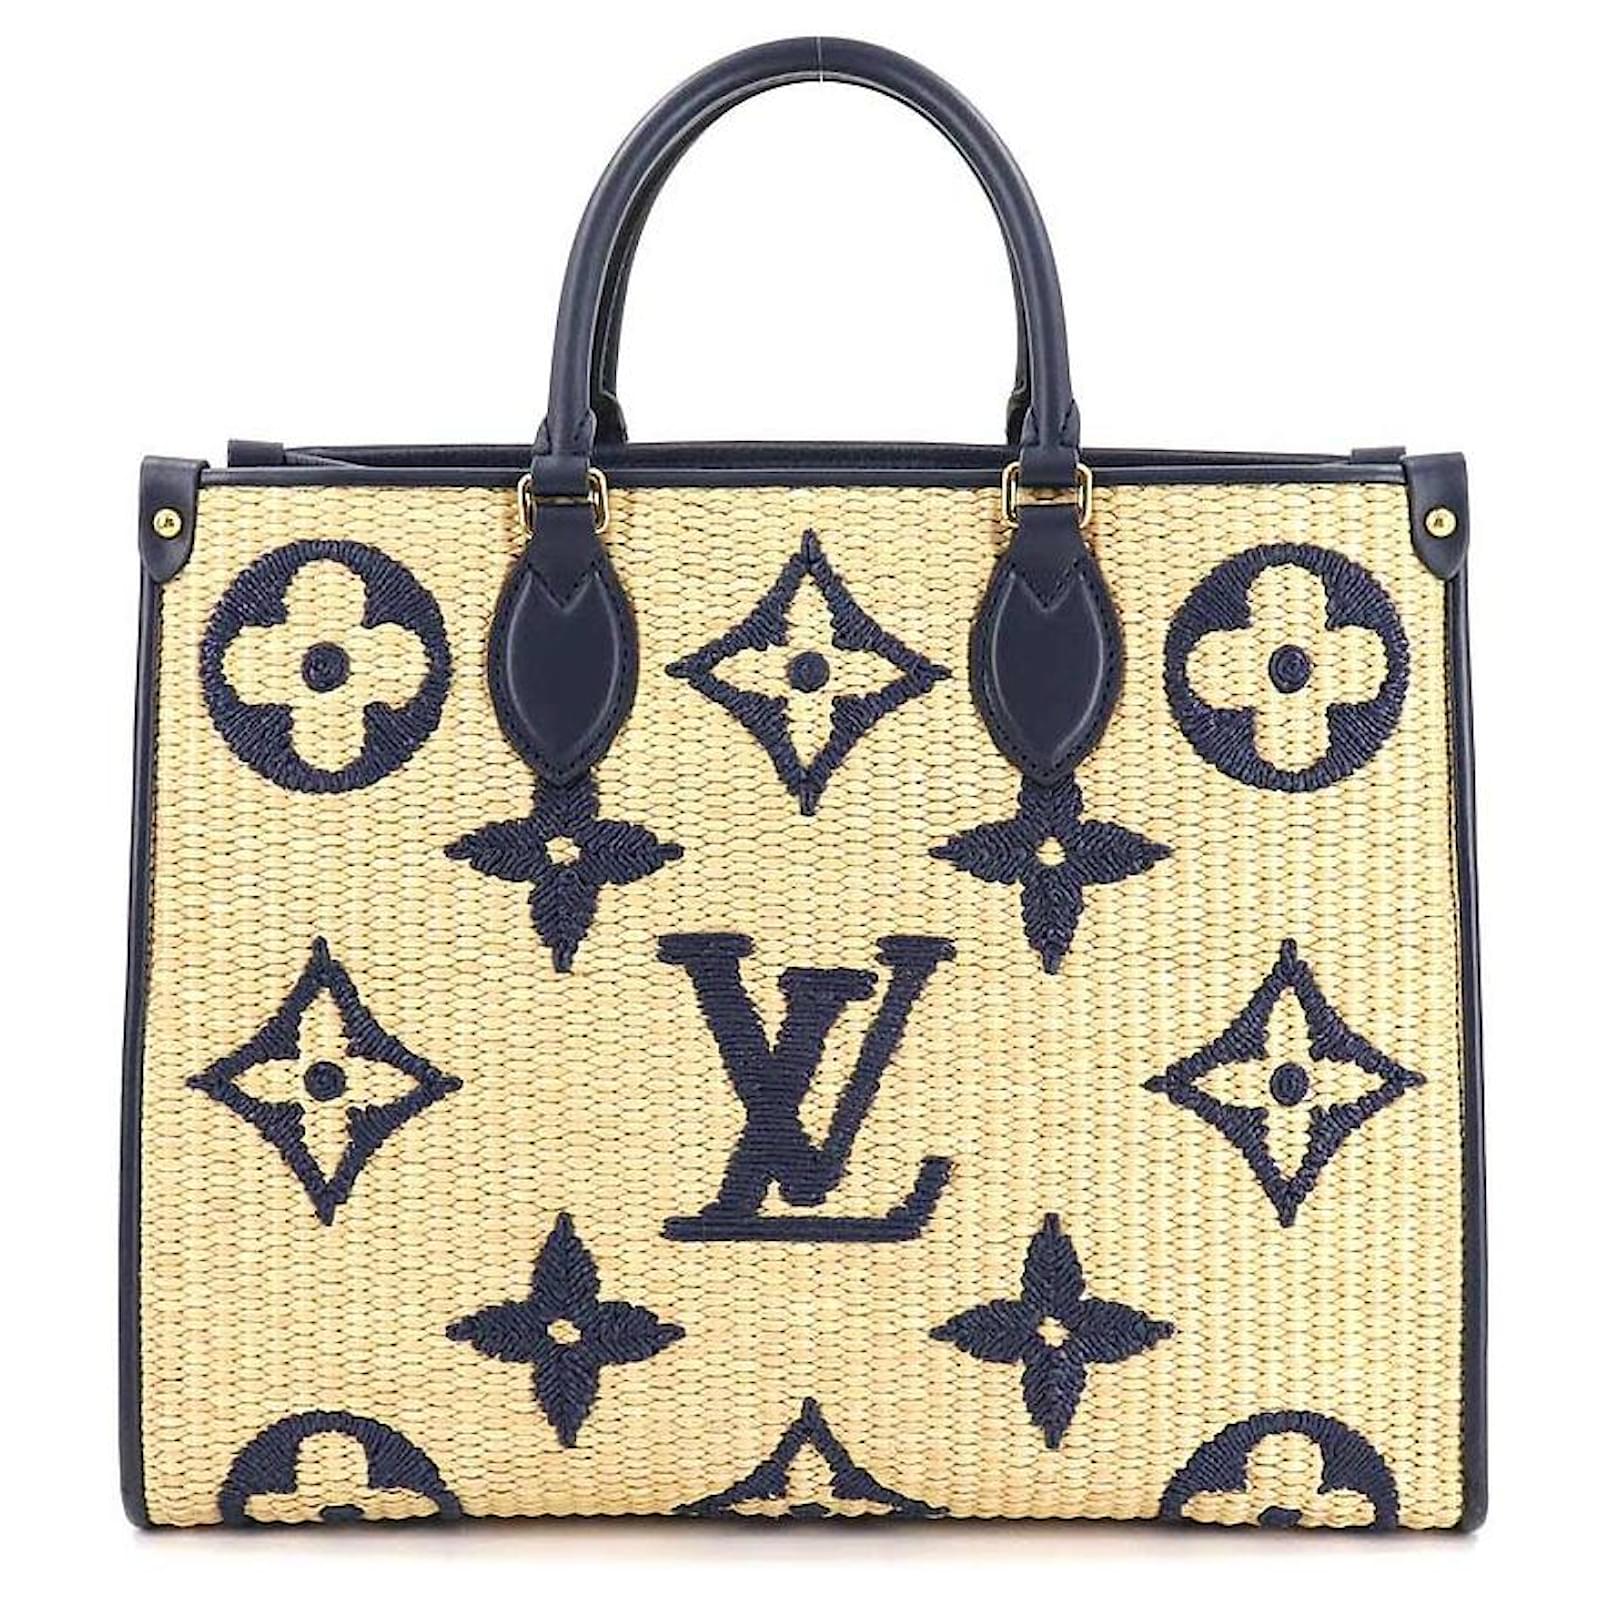 Authenticated used Louis Vuitton Louis Vuitton Monogram on The Go mm Blue M57723 Ladies Raffia Tote Bag, Adult Unisex, Size: (HxWxD): 26cm x 34cm x